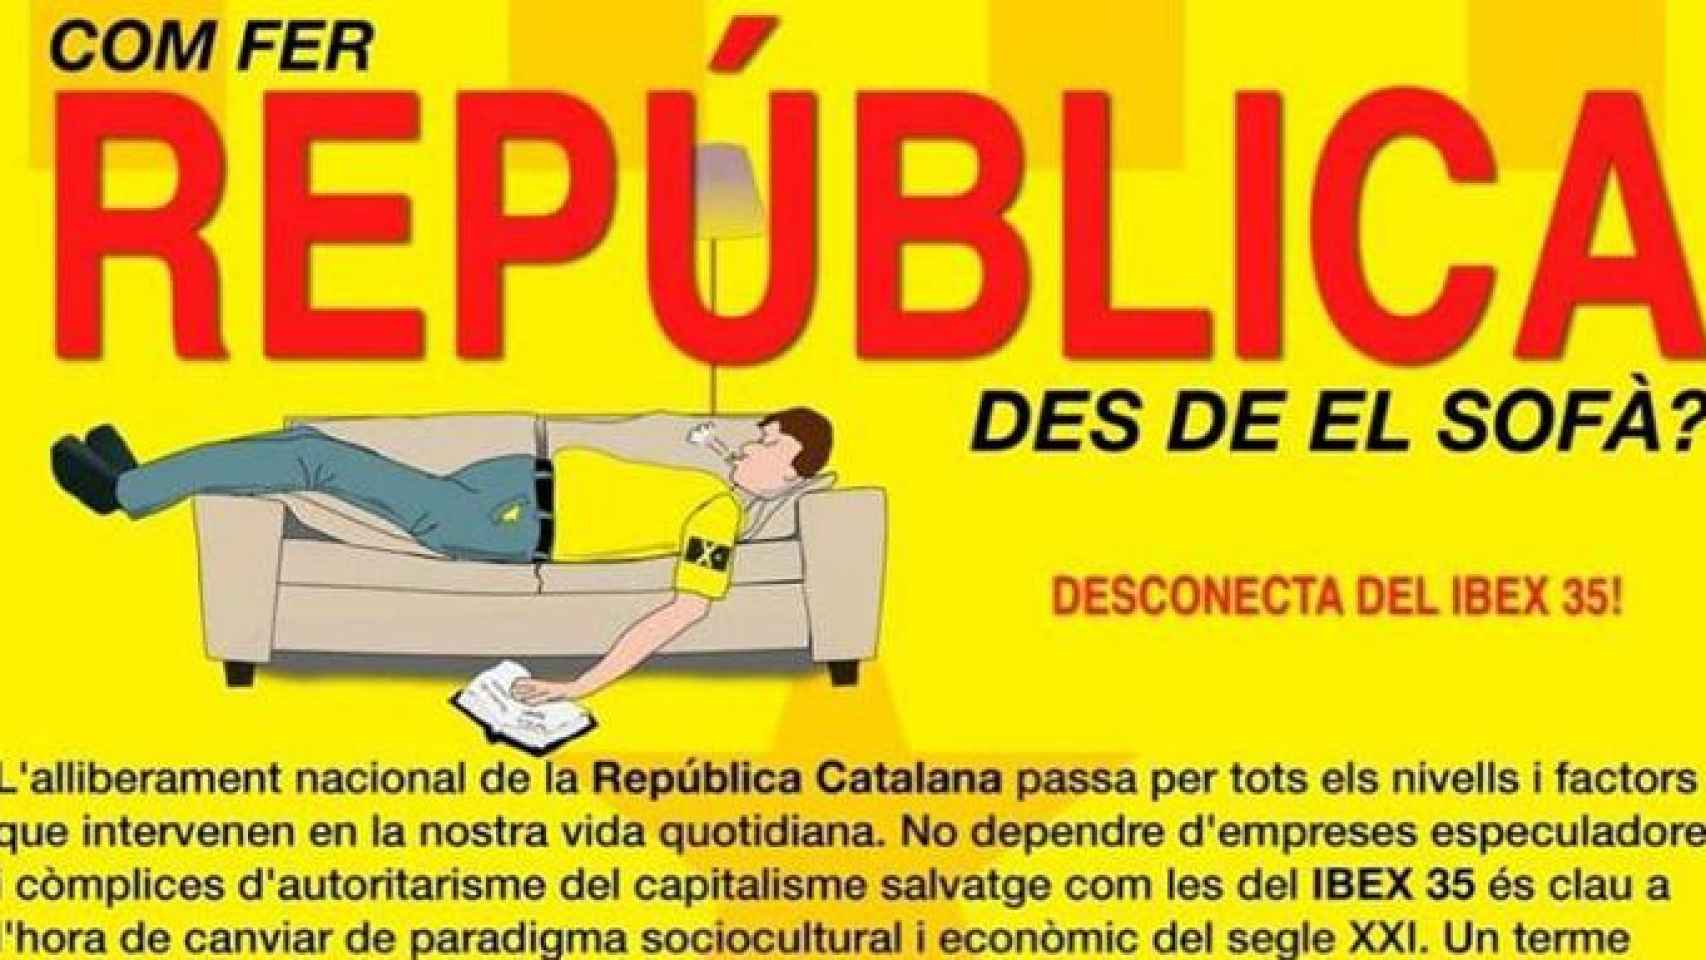 Folleto distribuido por el CDR de Martorell donde se enseña a hacer república desde el sofá consumiendo solo en empresas afines al independentismo / CG